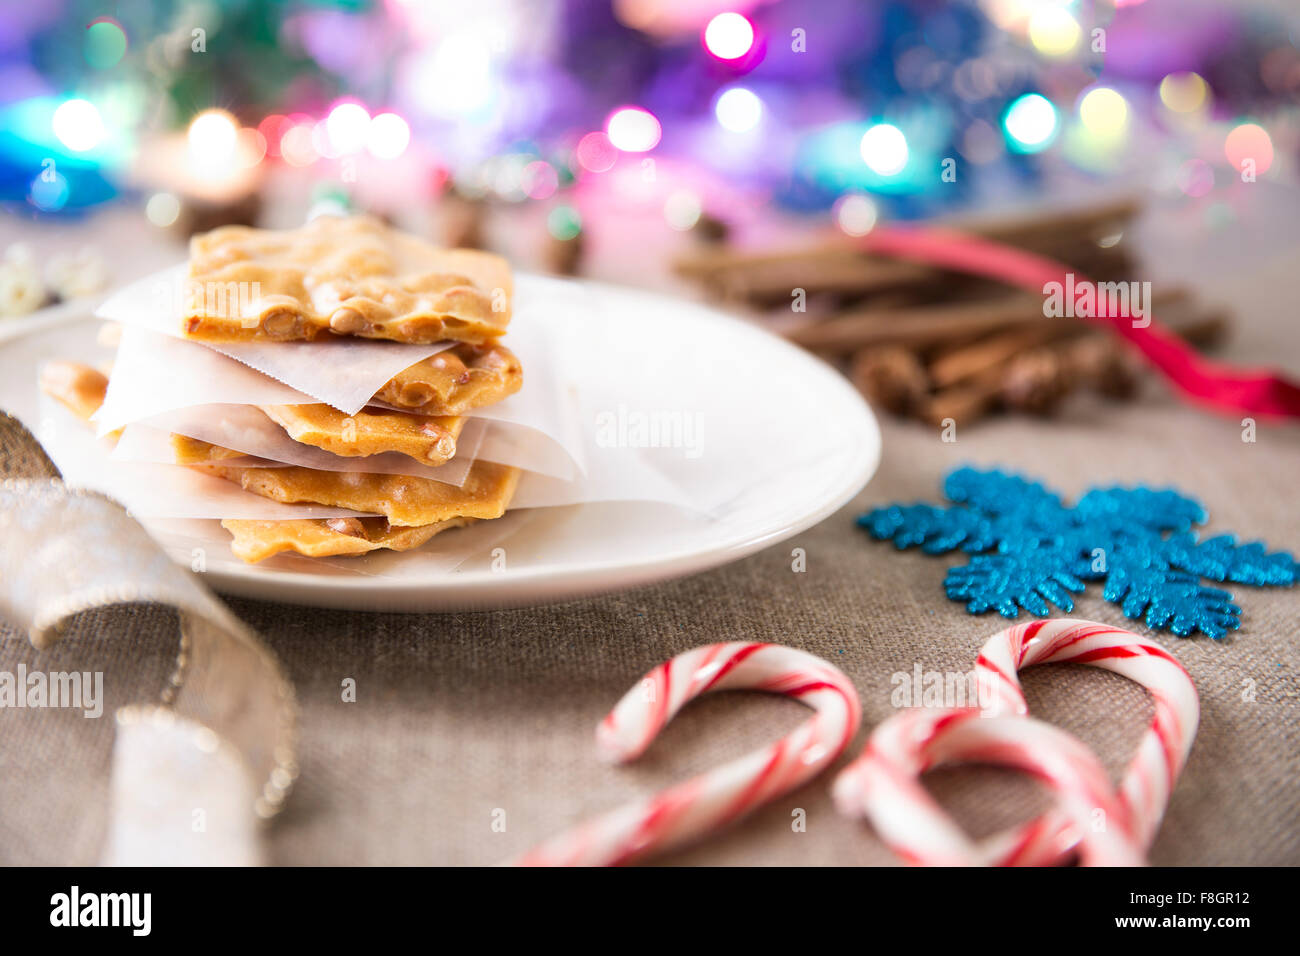 Festliche Szene mit Erdnusskrokant auf eine Platte und Candy Canes und anderen Weihnachtsschmuck Stockfoto